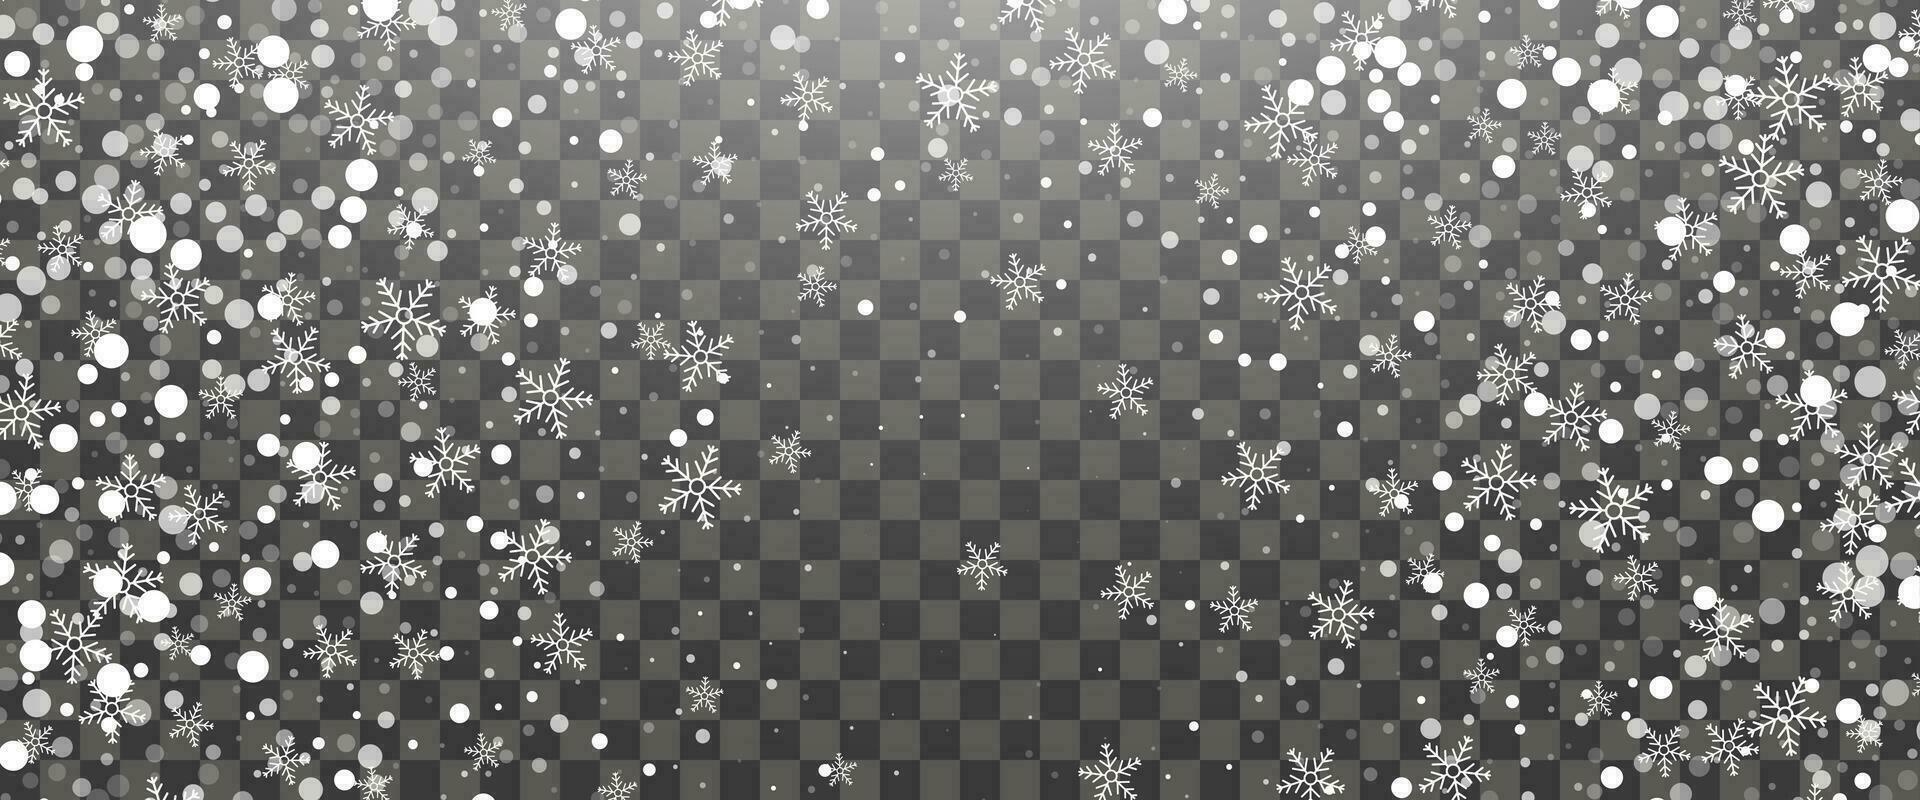 Schneefall und fallen Schneeflocken auf Hintergrund. Weiß Schneeflocken und Weihnachten Schnee. Vektor Illustration